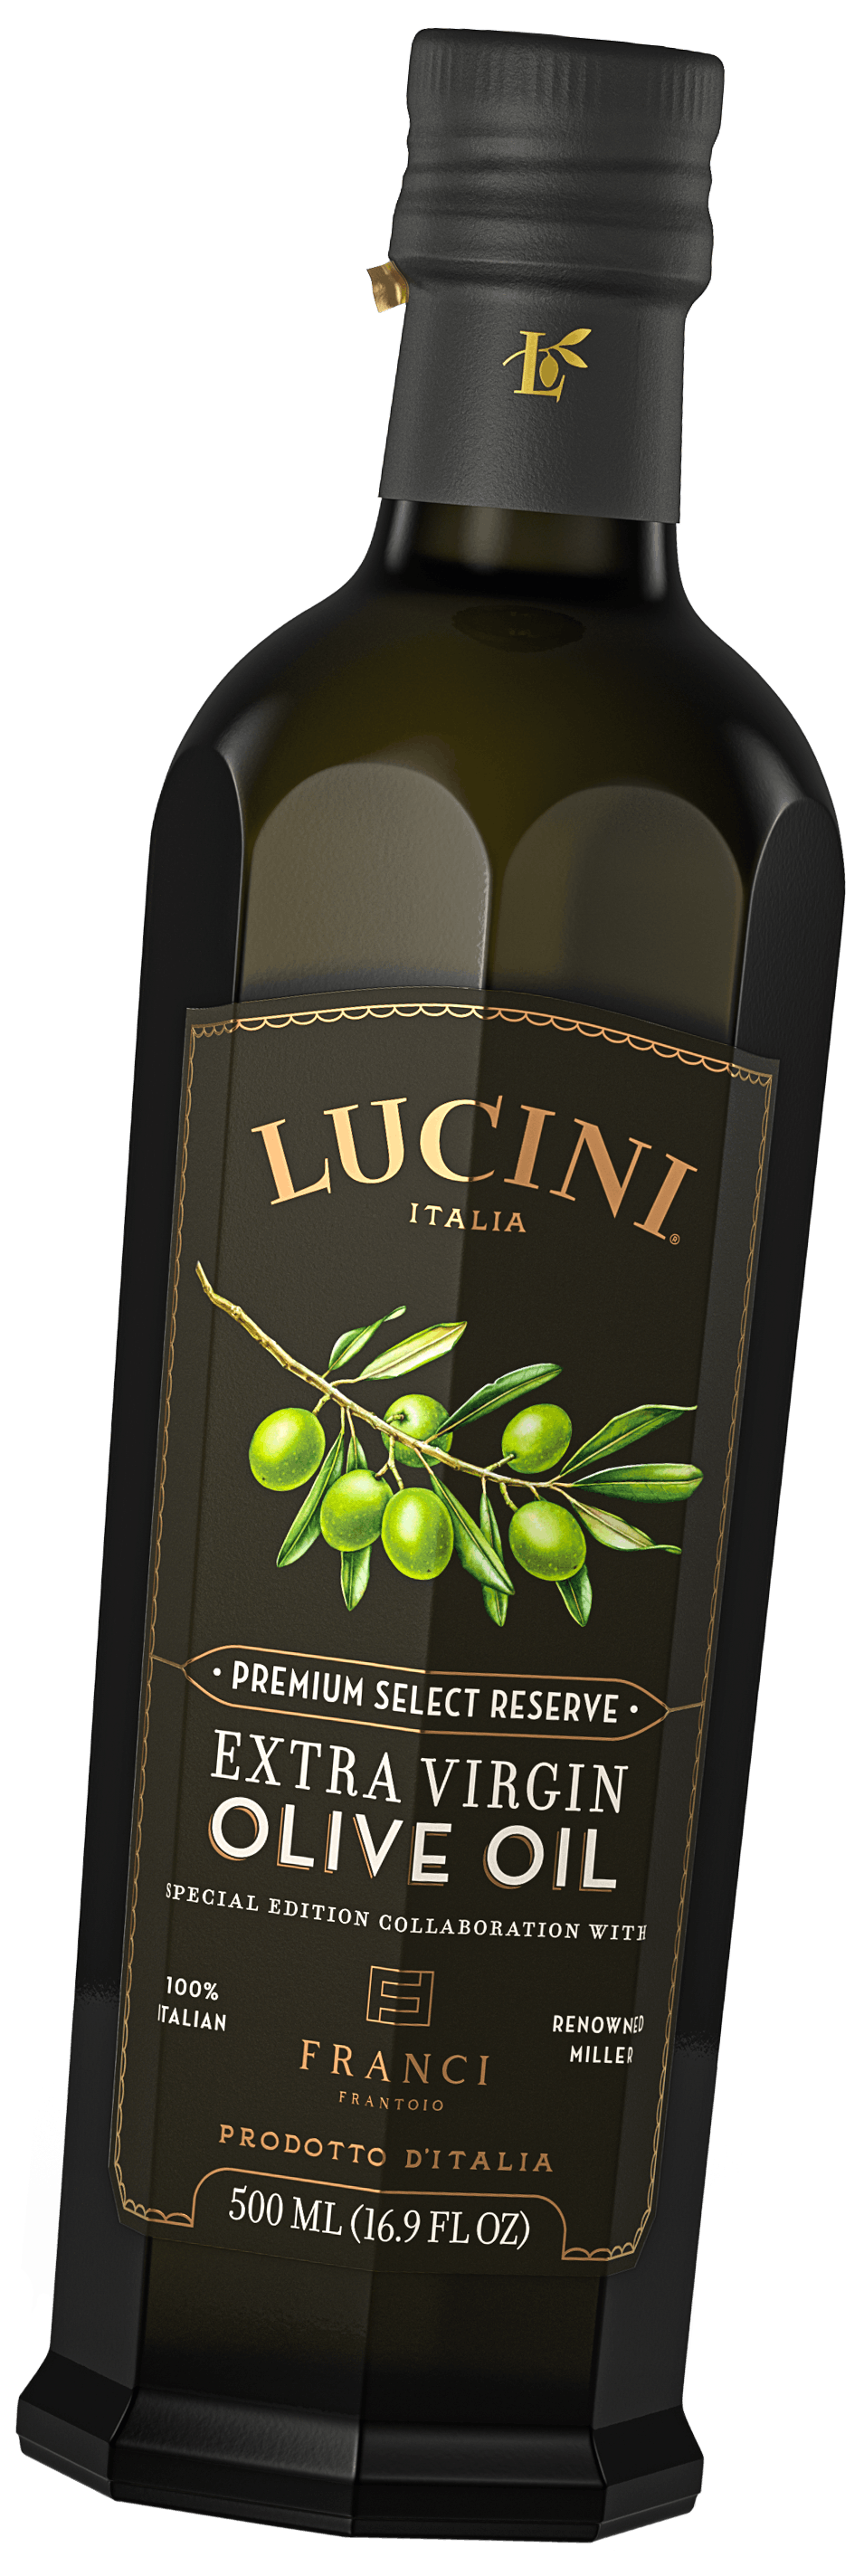 lucini-franci-olive-oil-bottle